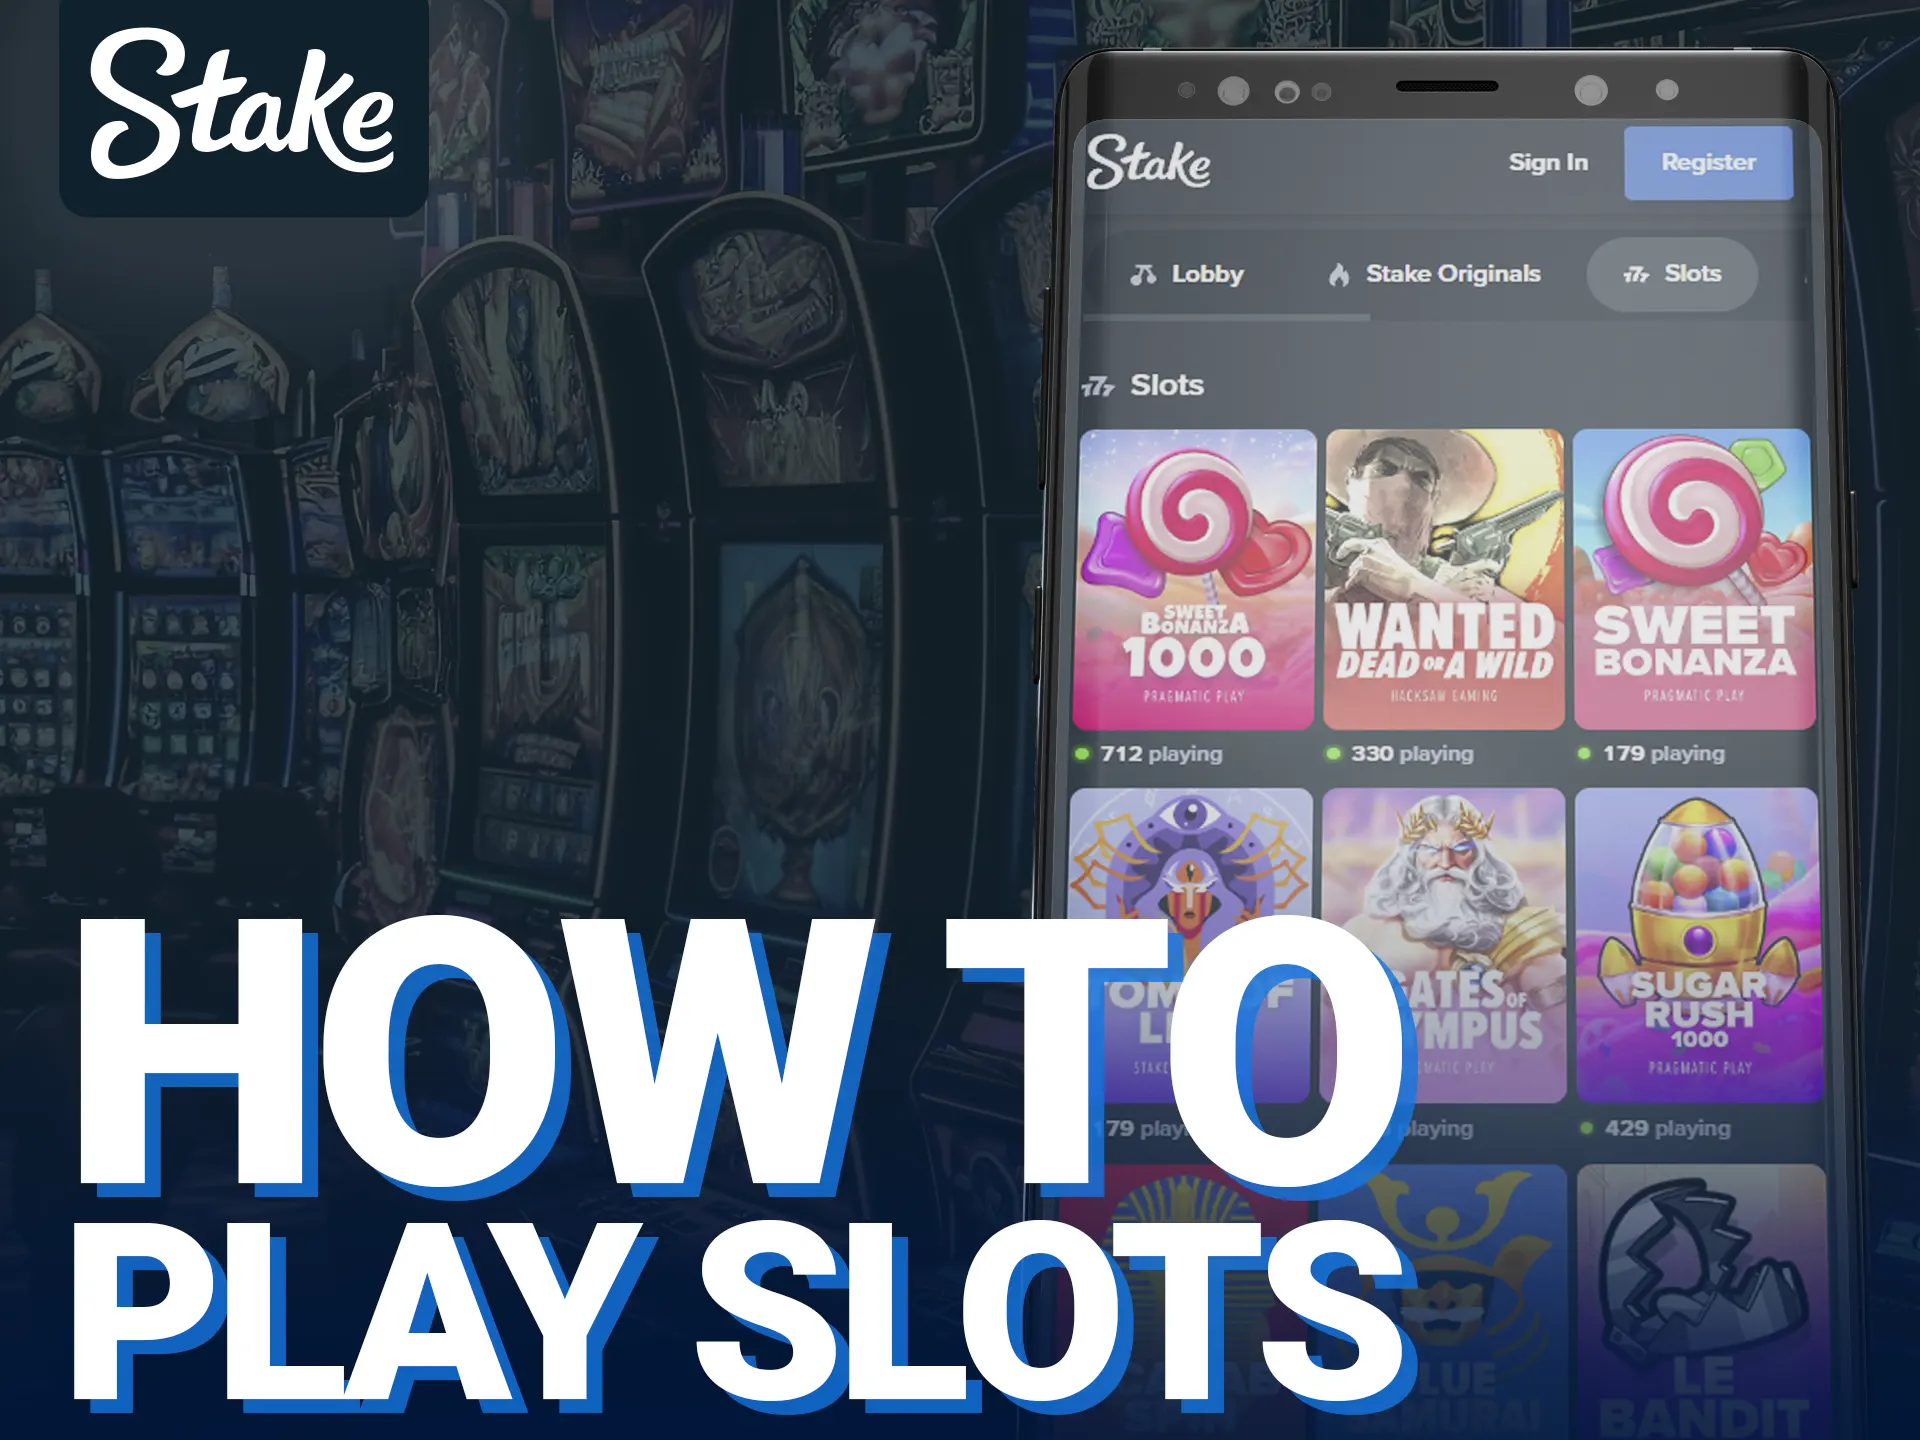 Play slots on Stake app in five steps.